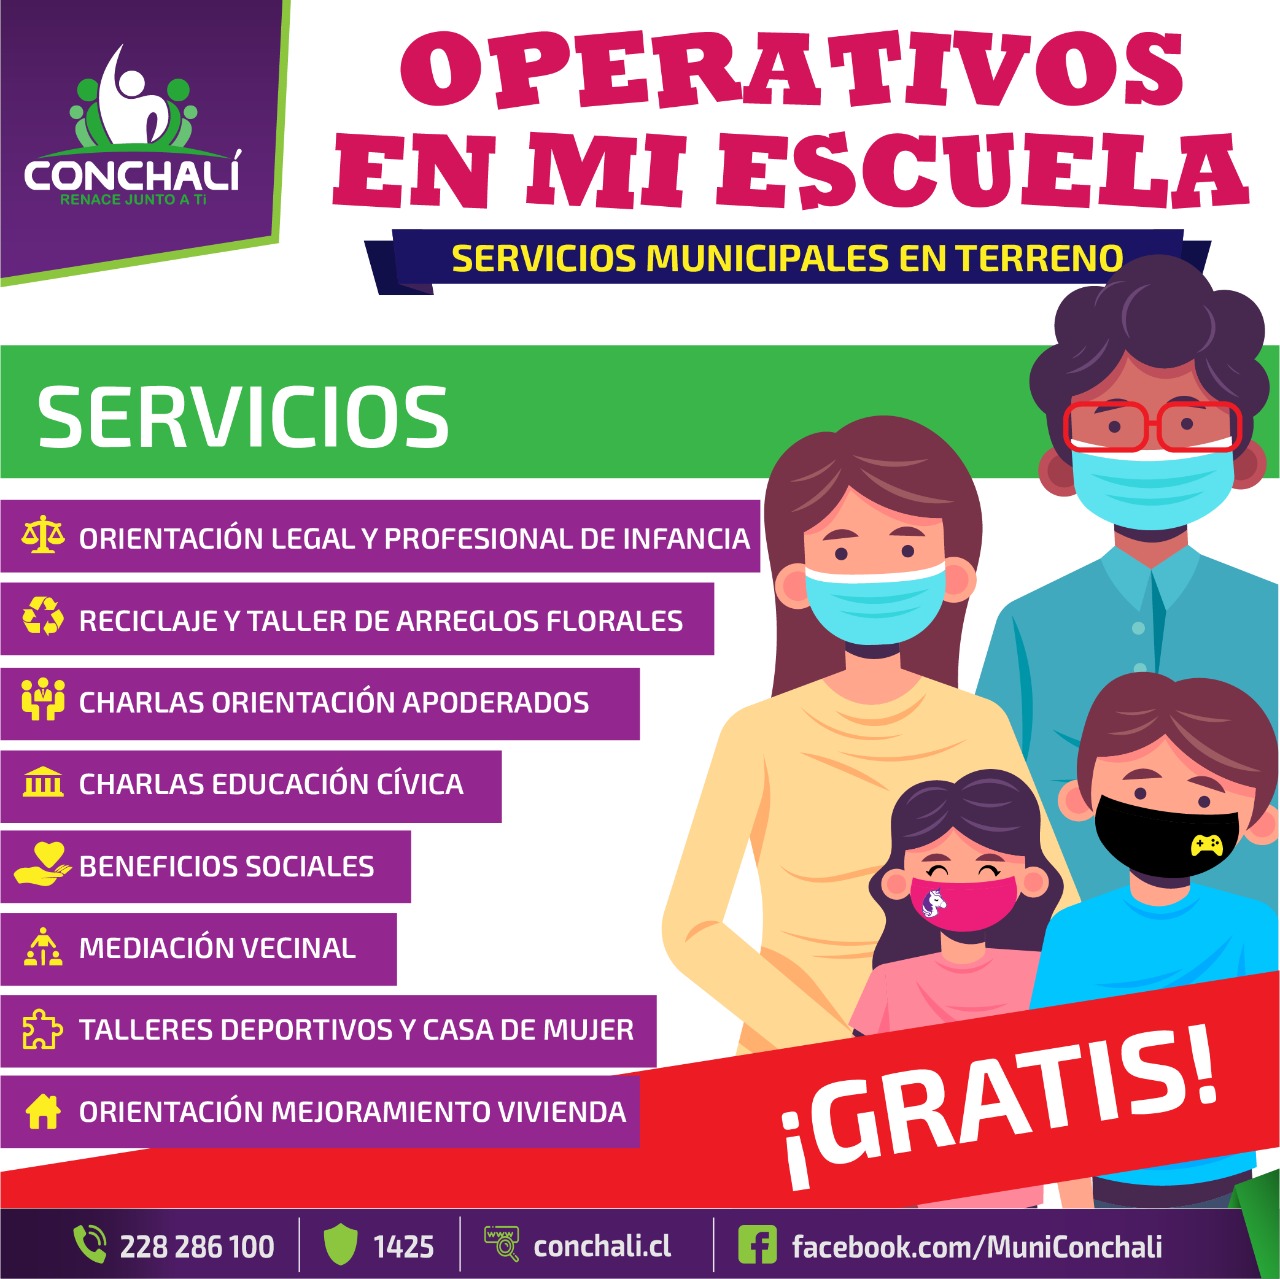 “OPERATIVOS EN MI ESCUELA” OFRECE SERVICIOS MUNICIPALES GRATIS EN TU BARRIO